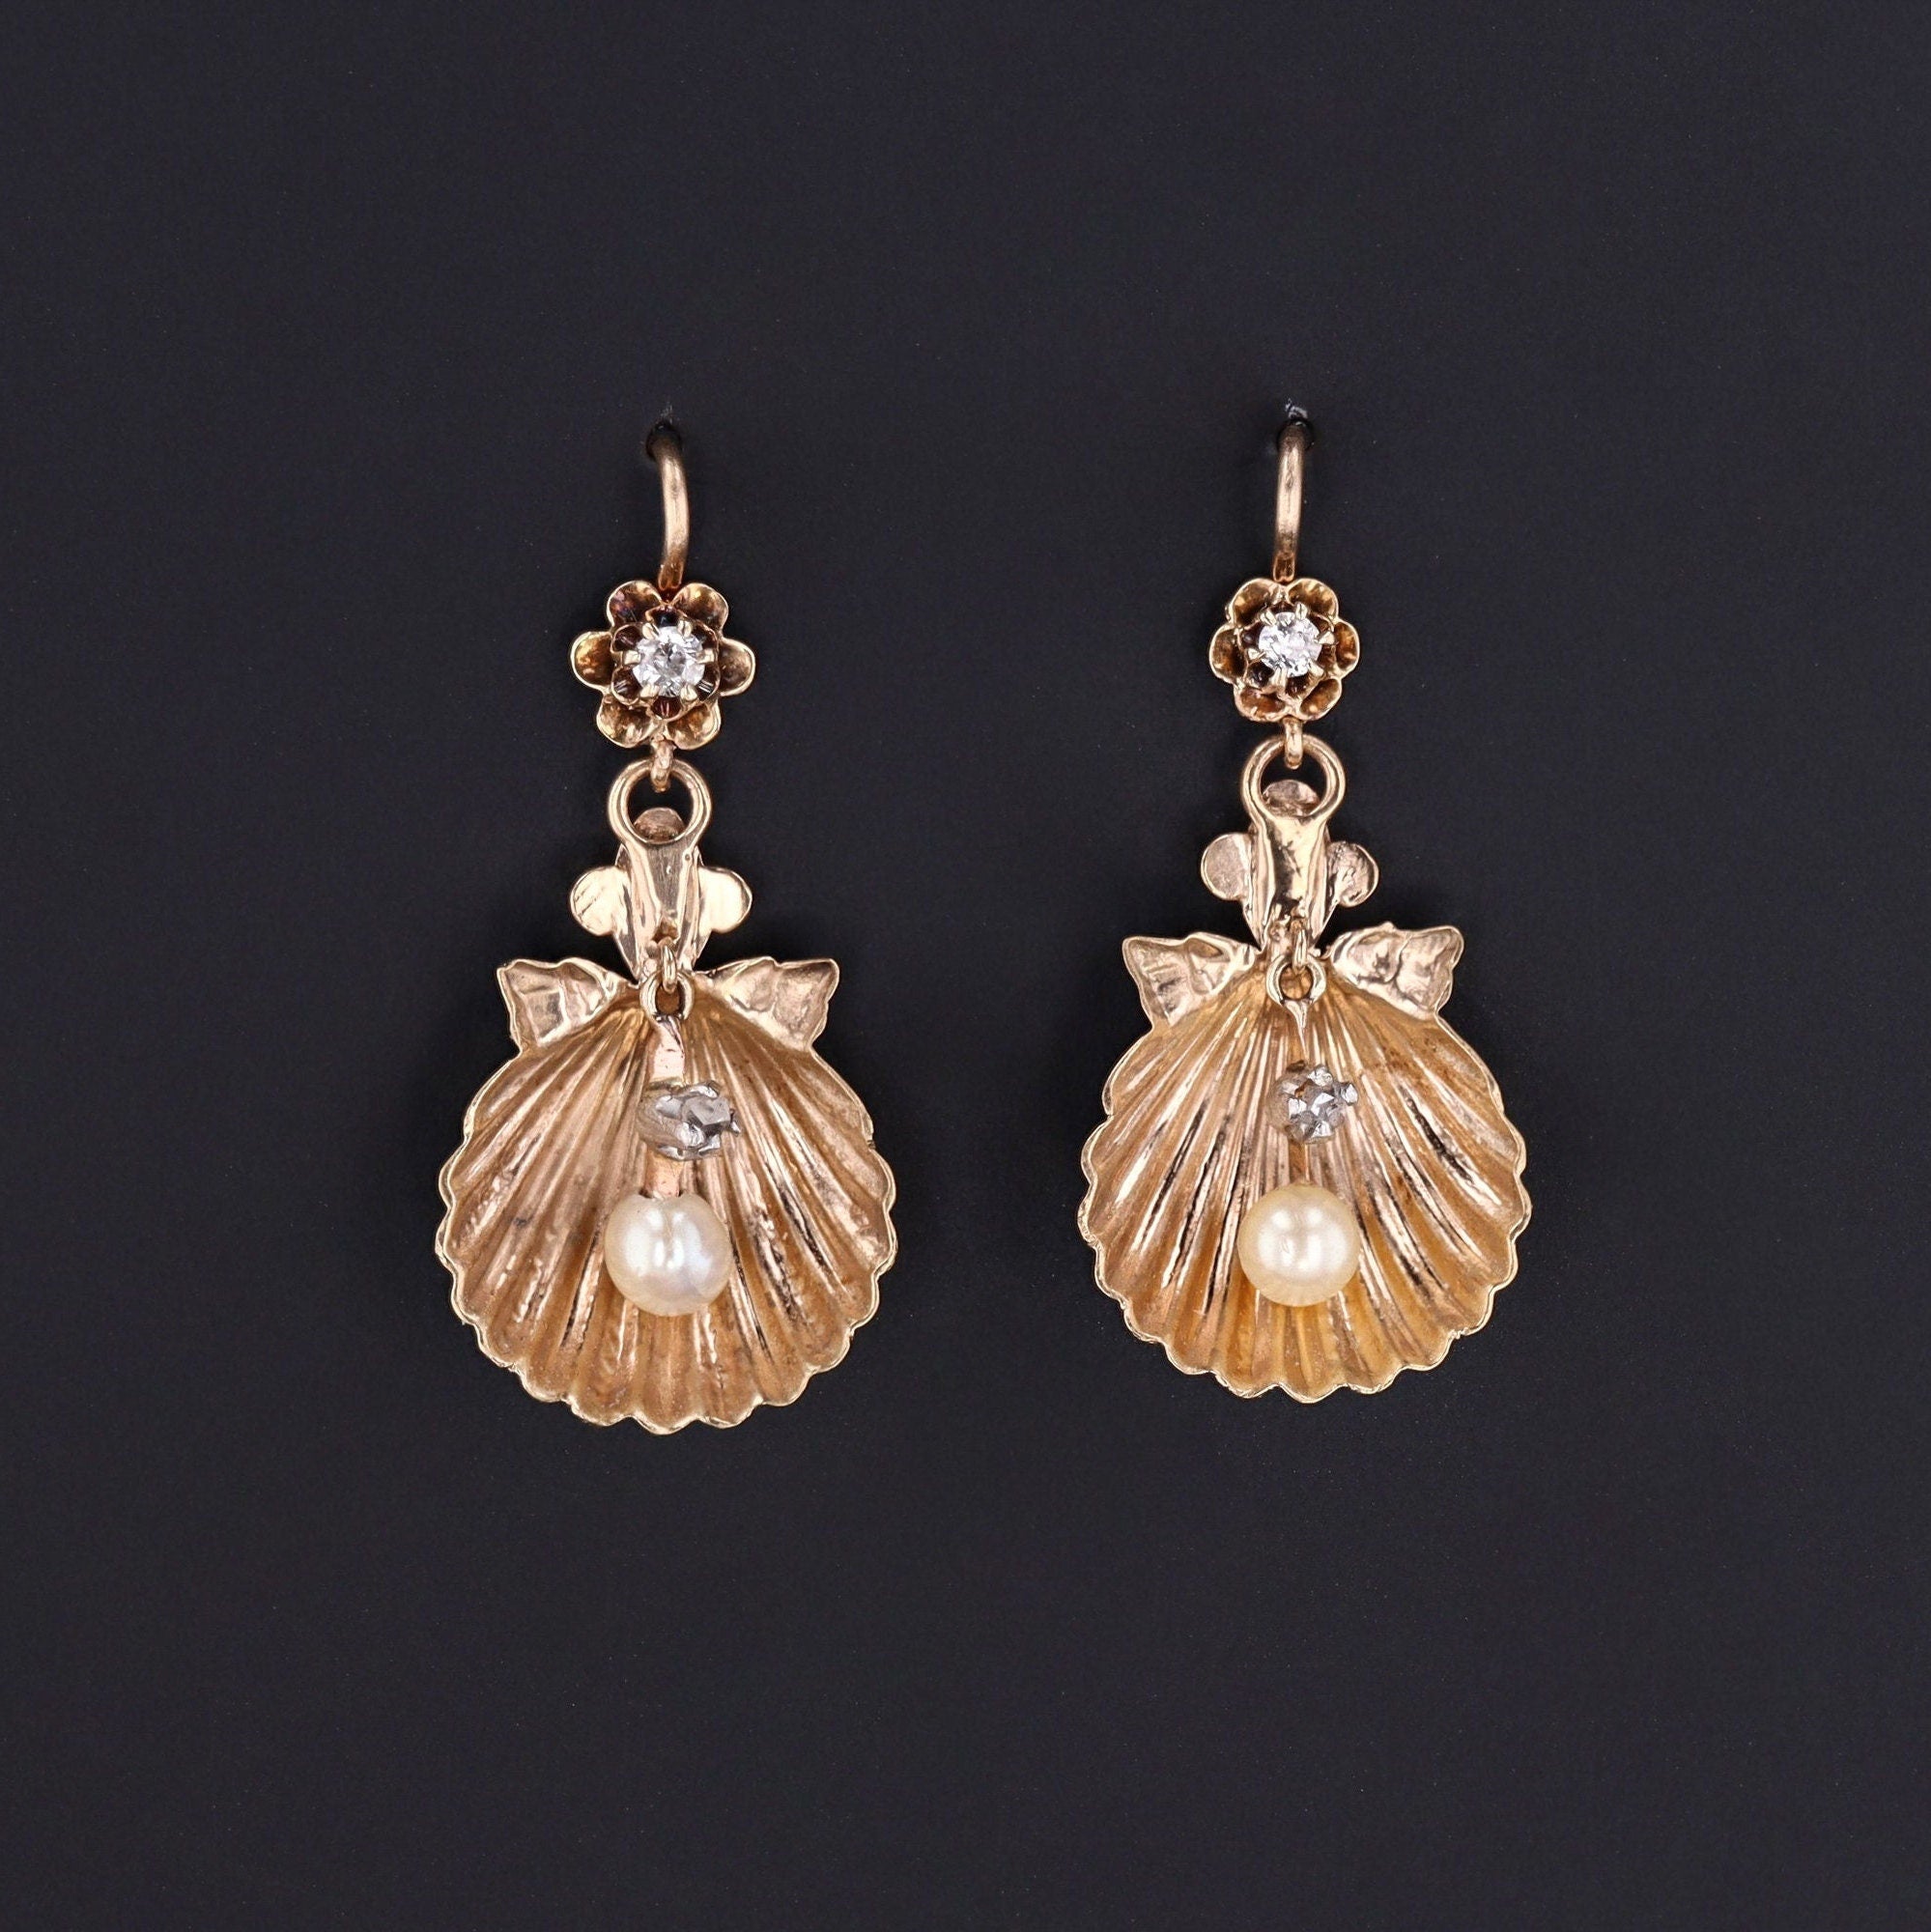 Antique Shell Earrings of 14k Gold